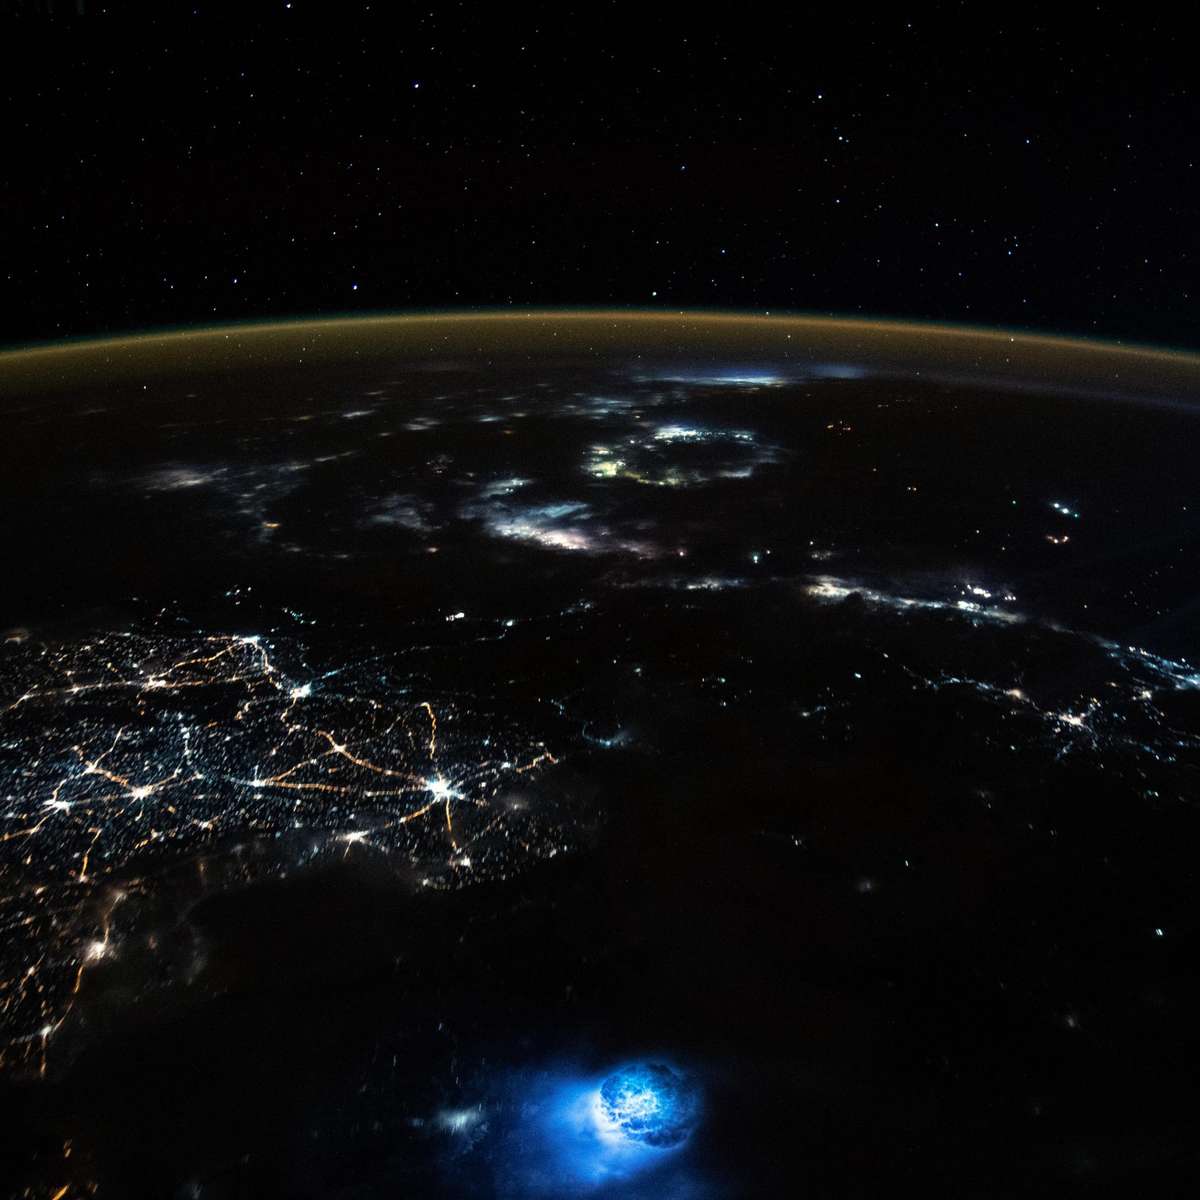 Jatos azuis: fenômeno raro na atmosfera é registrado por estação espacial